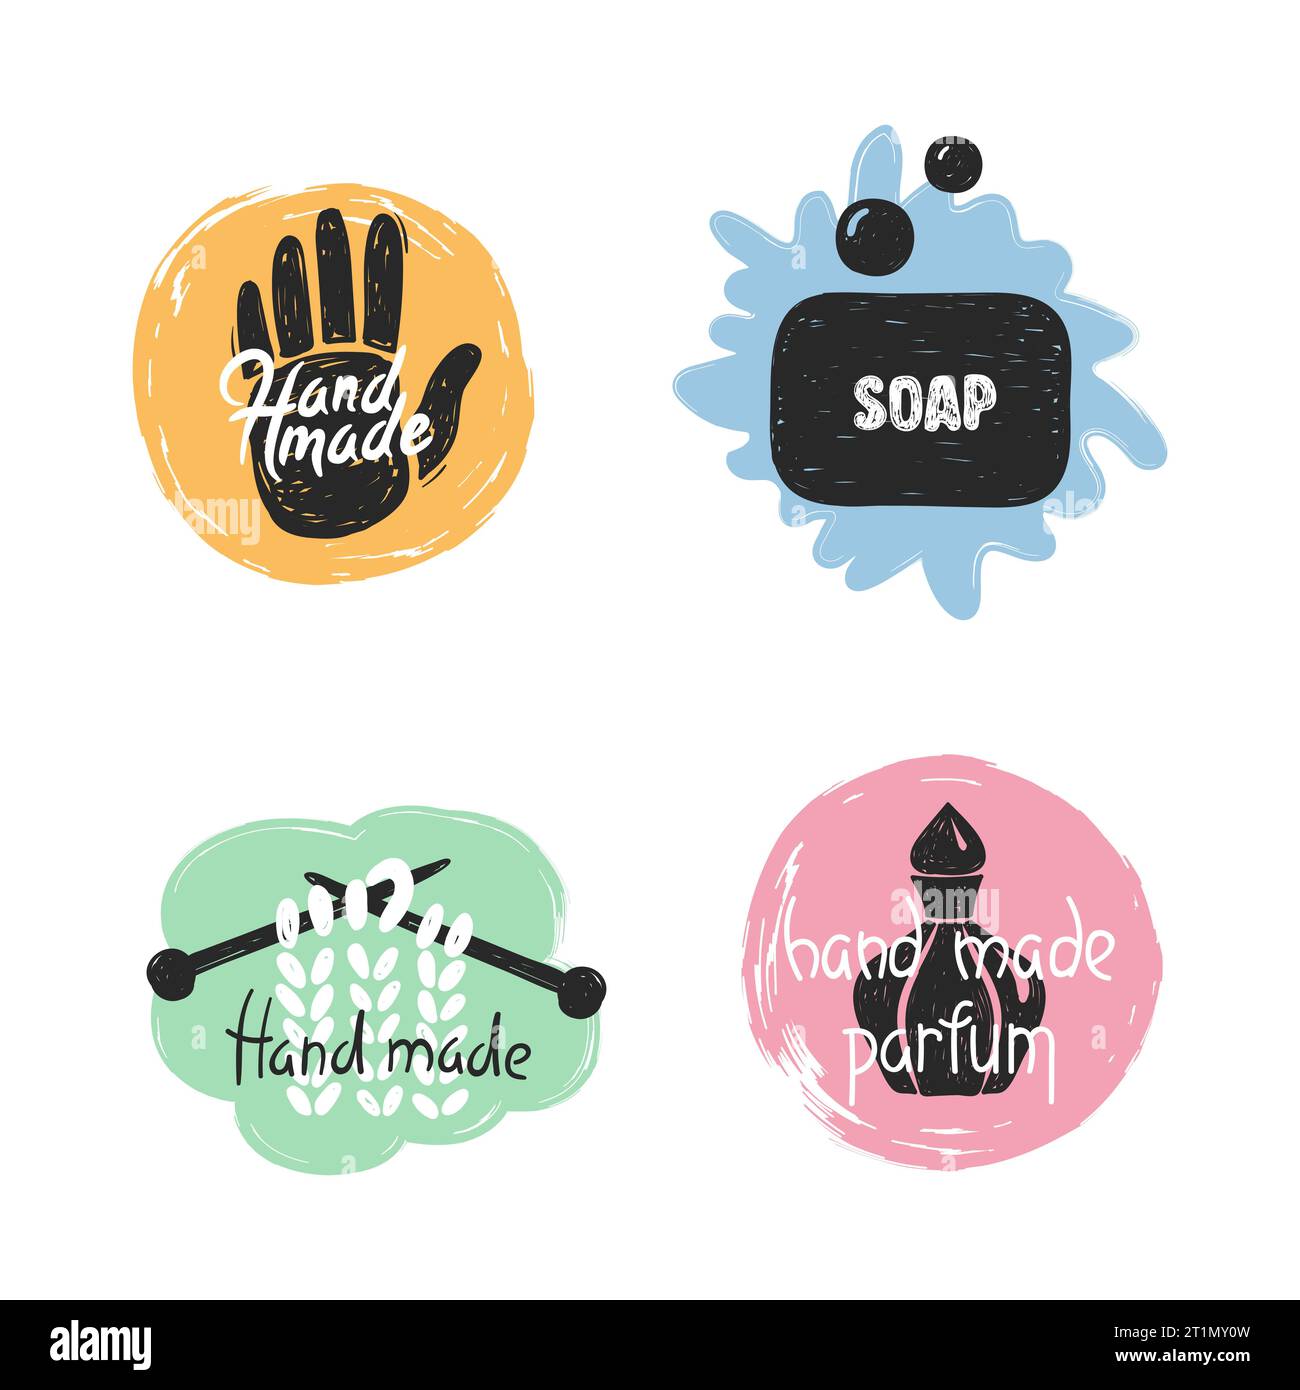 soap logos